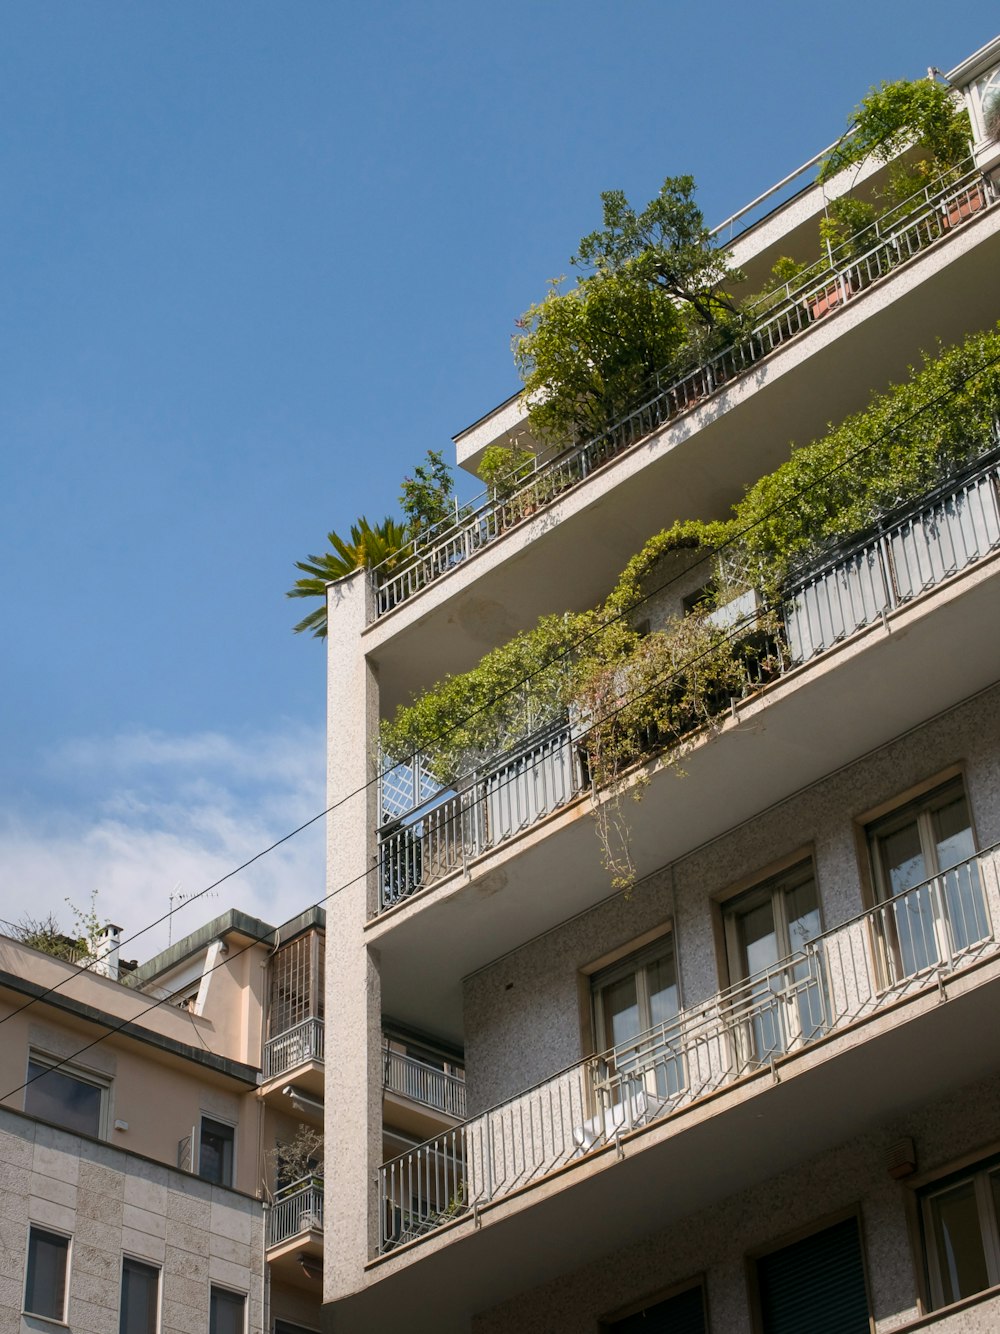 un grand bâtiment avec des balcons et des plantes sur les balcons